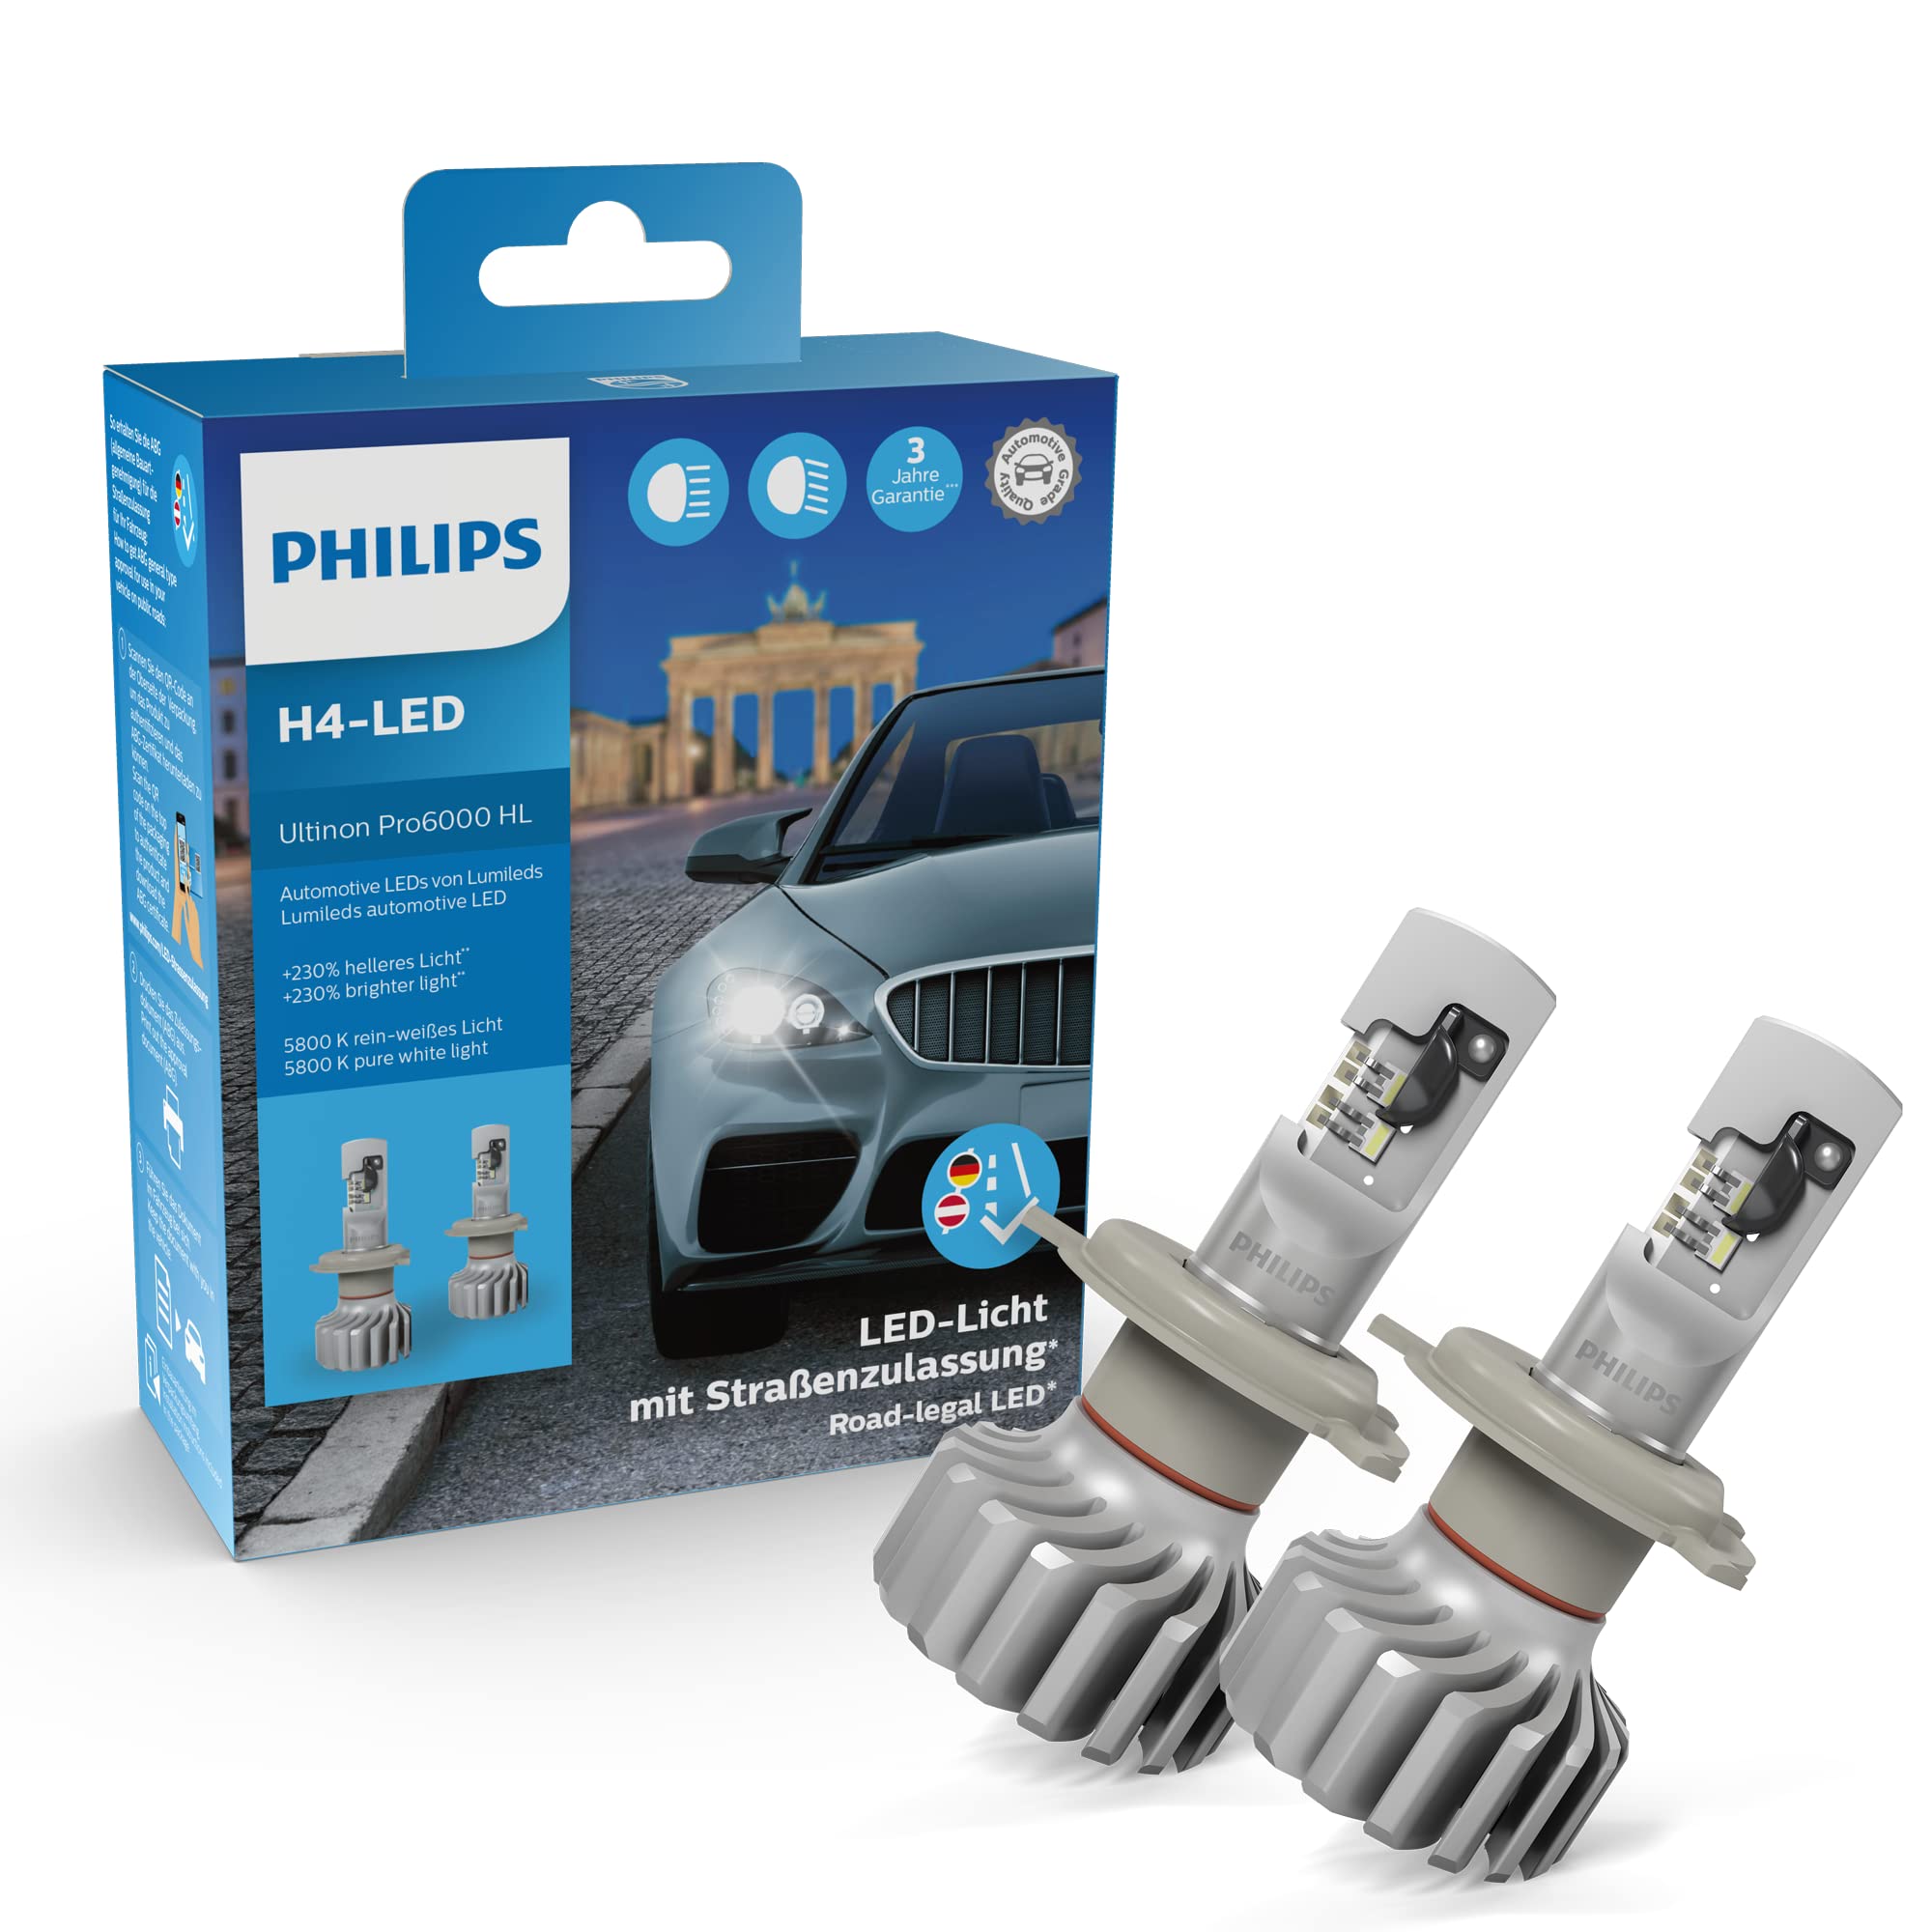 Philips Ultinon Pro6000 H4-LED Scheinwerferlampe mit Straßenzulassung, 230% helleres Licht, 5.800K